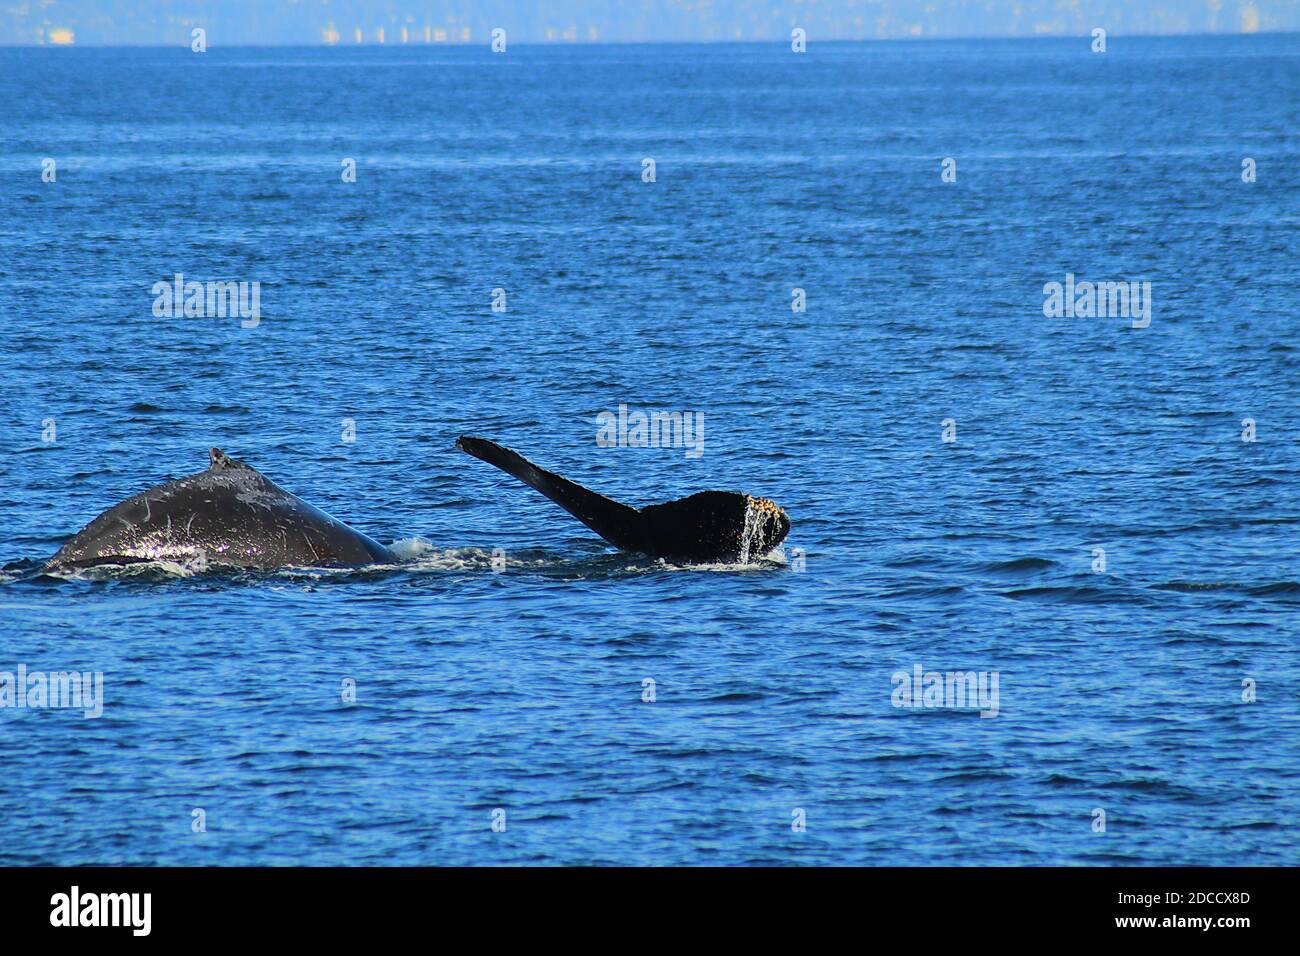 Dos ballenas jorobadas buceando en los mares Salish Foto de stock